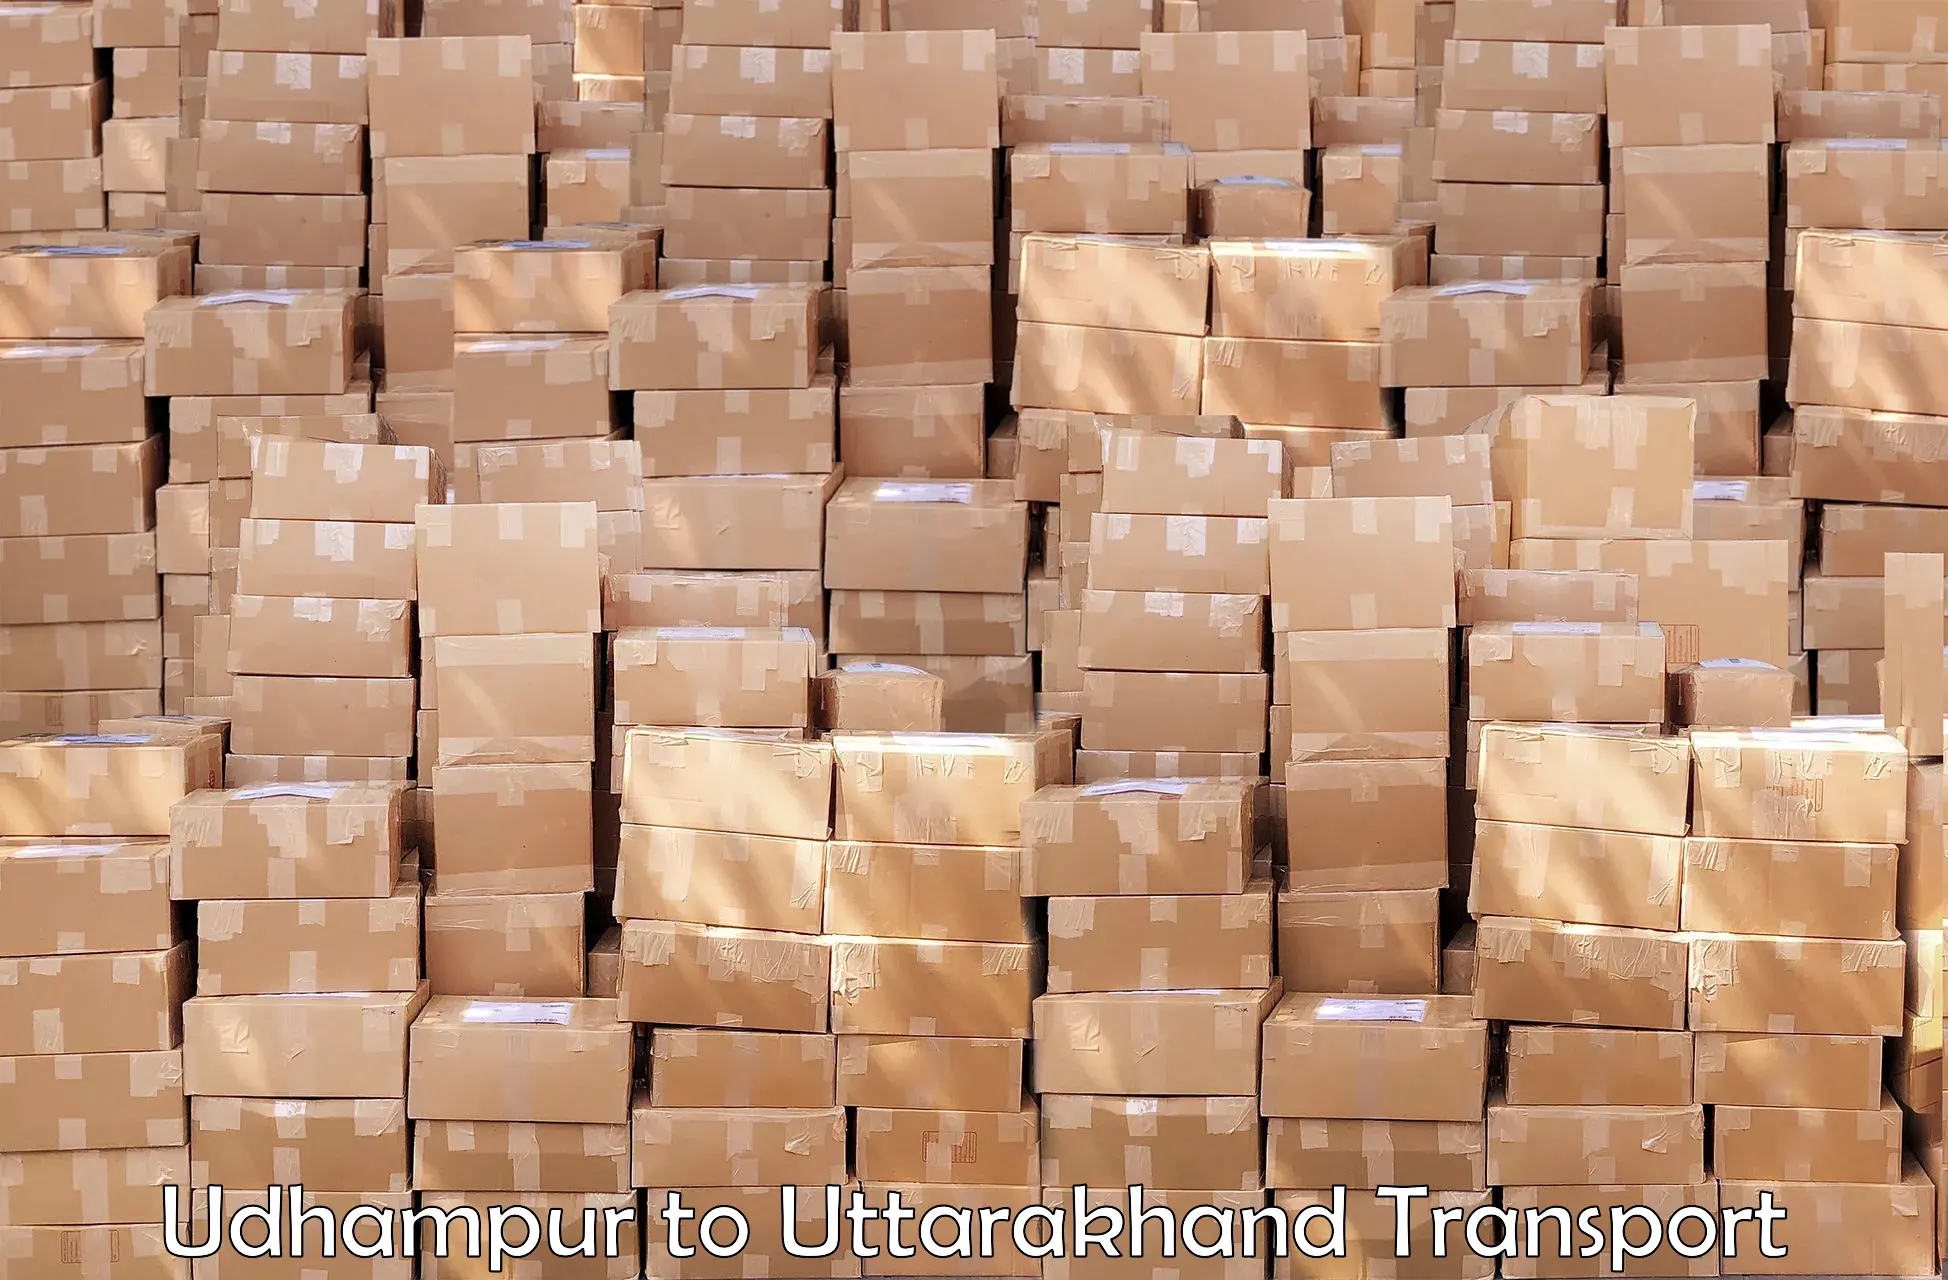 Cargo transportation services Udhampur to Srinagar Pauri Garhwal